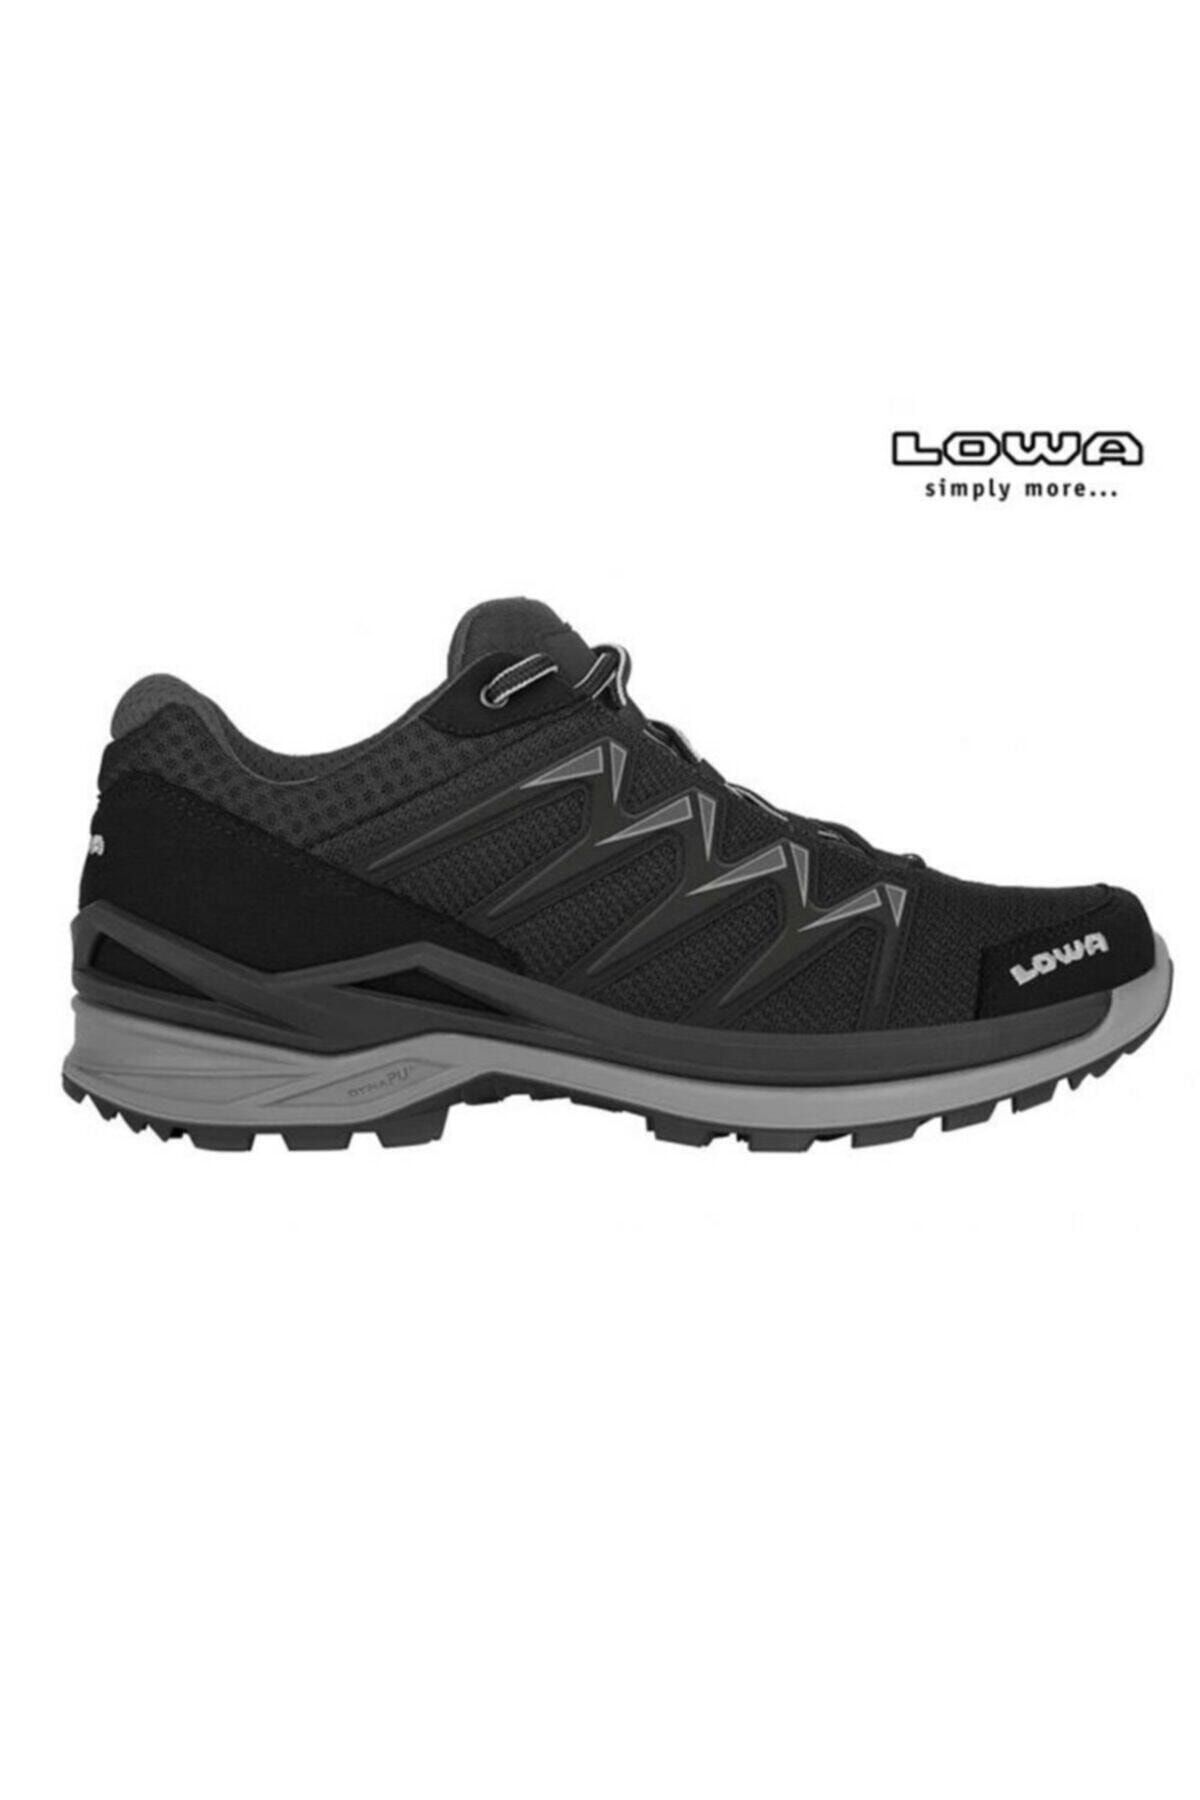 Lowa Innox Pro Gtx Low Erkek Ayakkabısı - 310709-9930